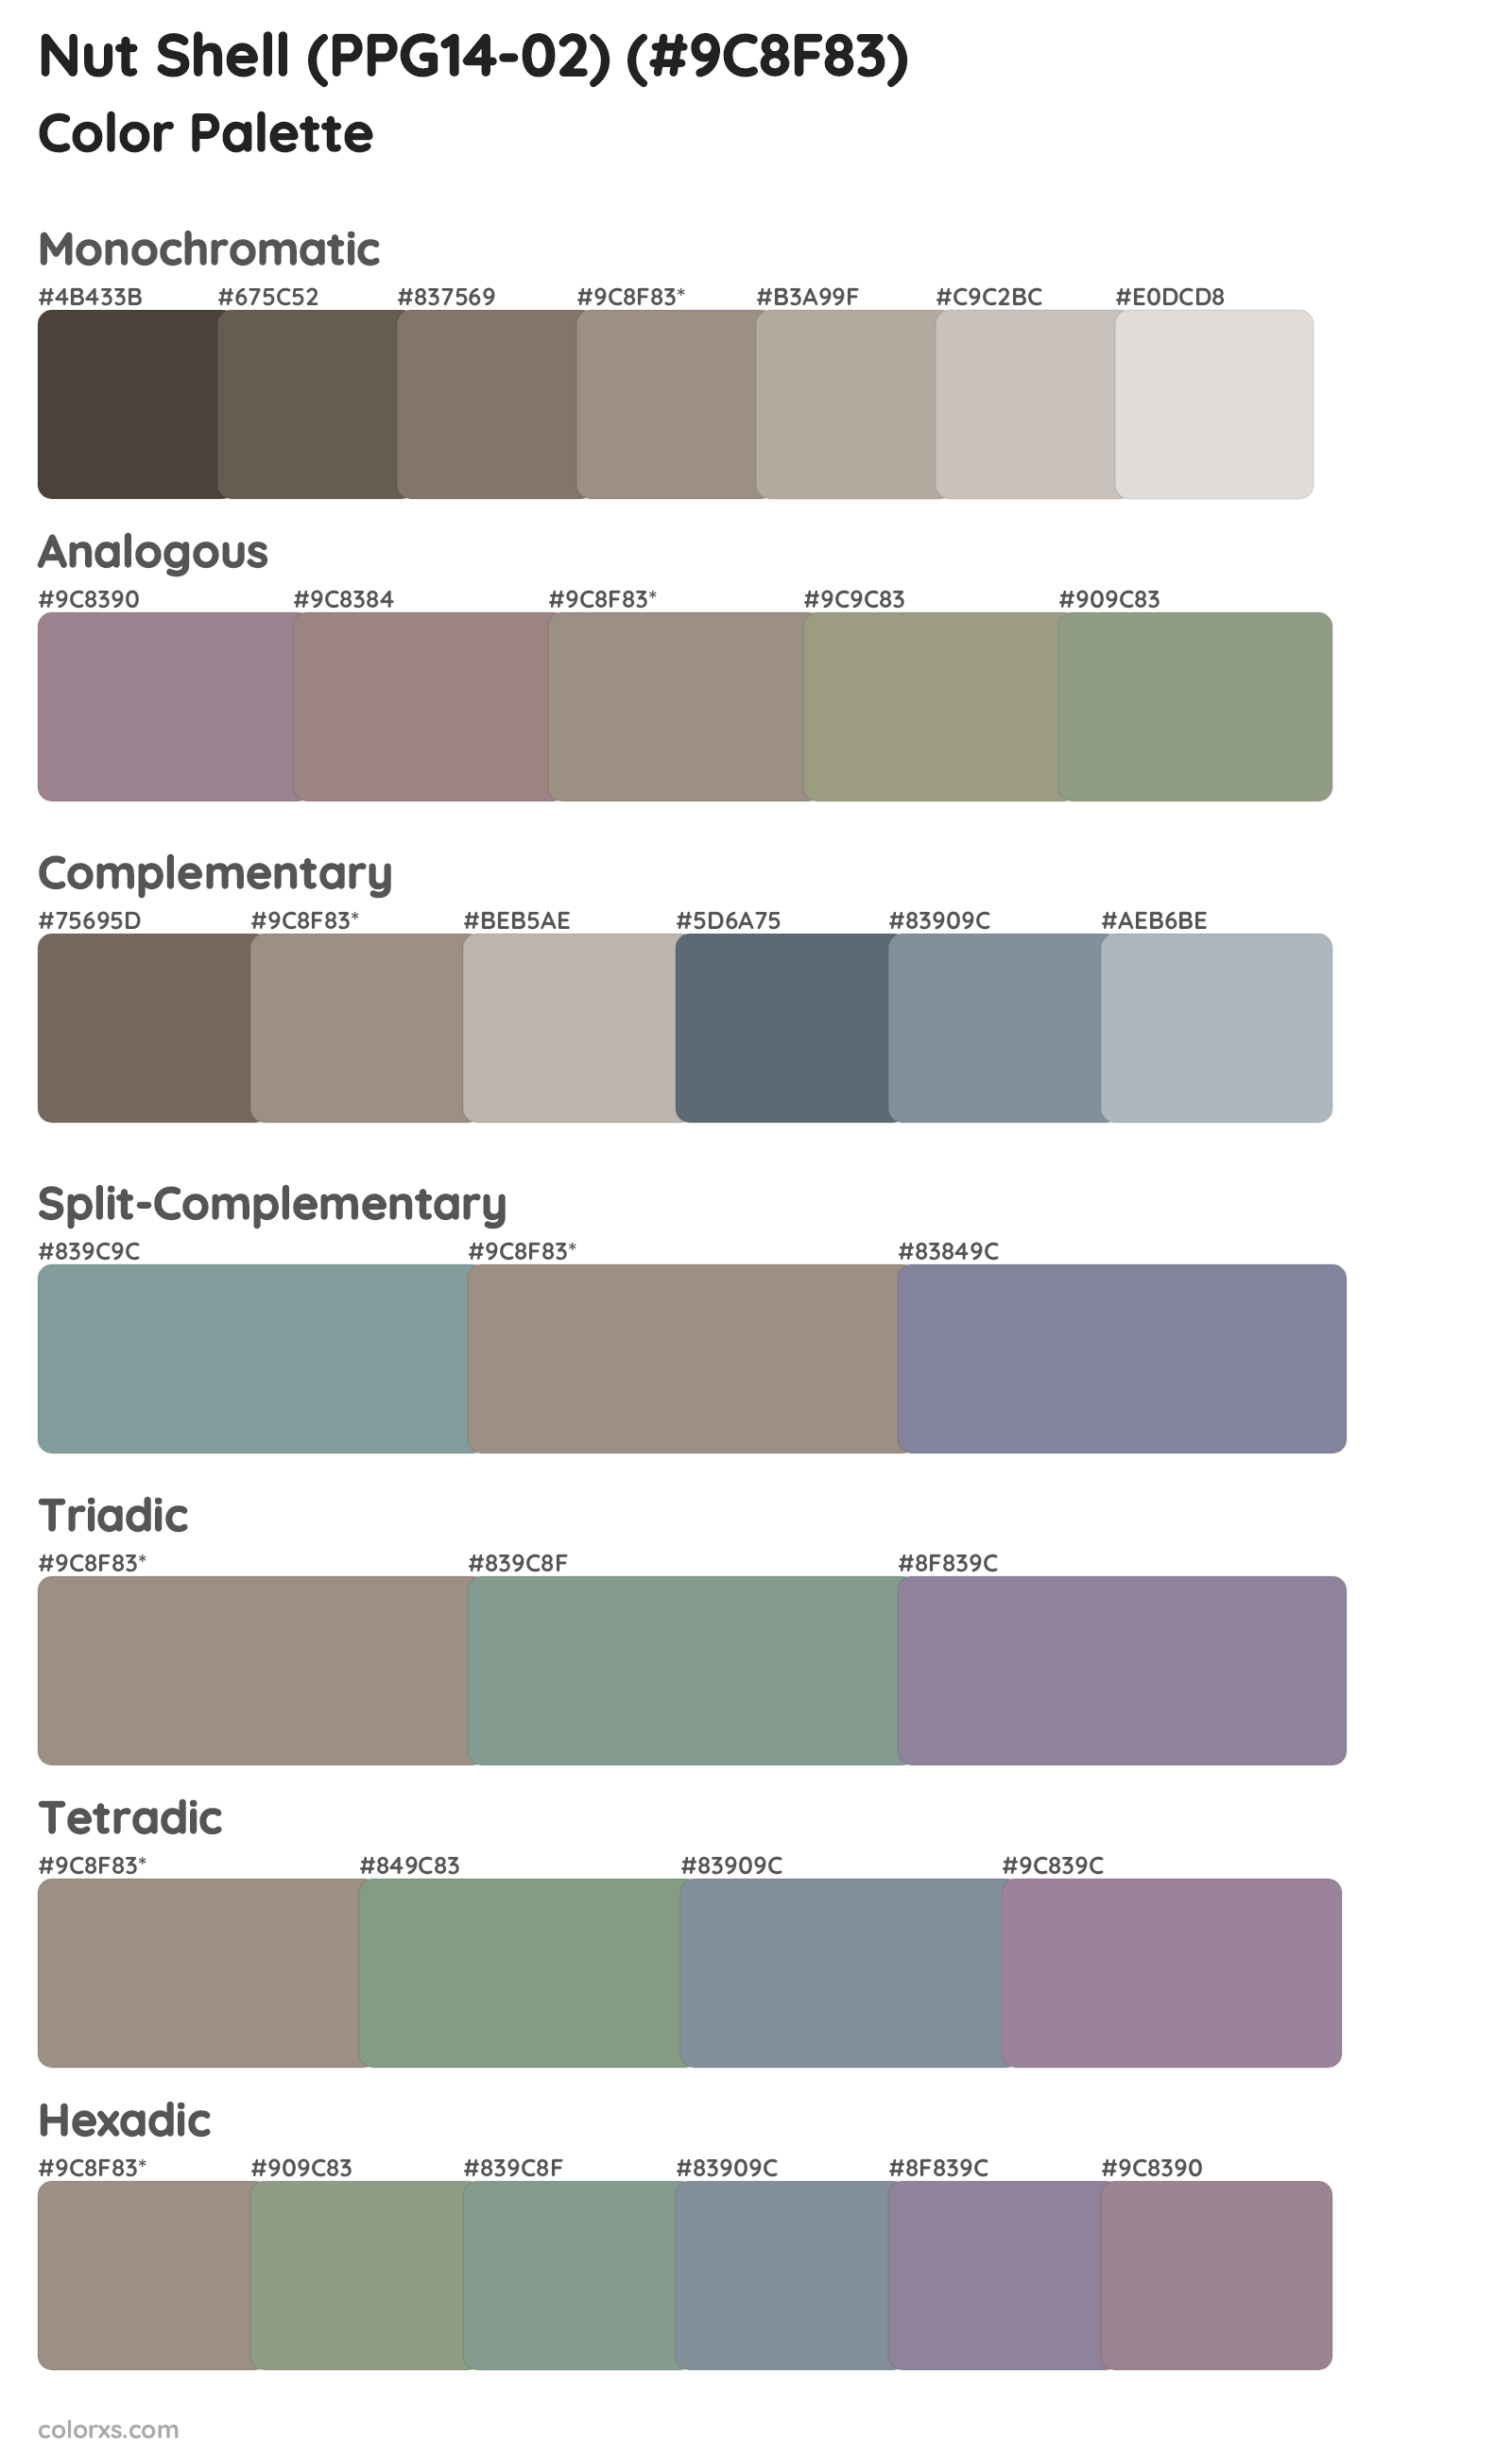 Nut Shell (PPG14-02) Color Scheme Palettes